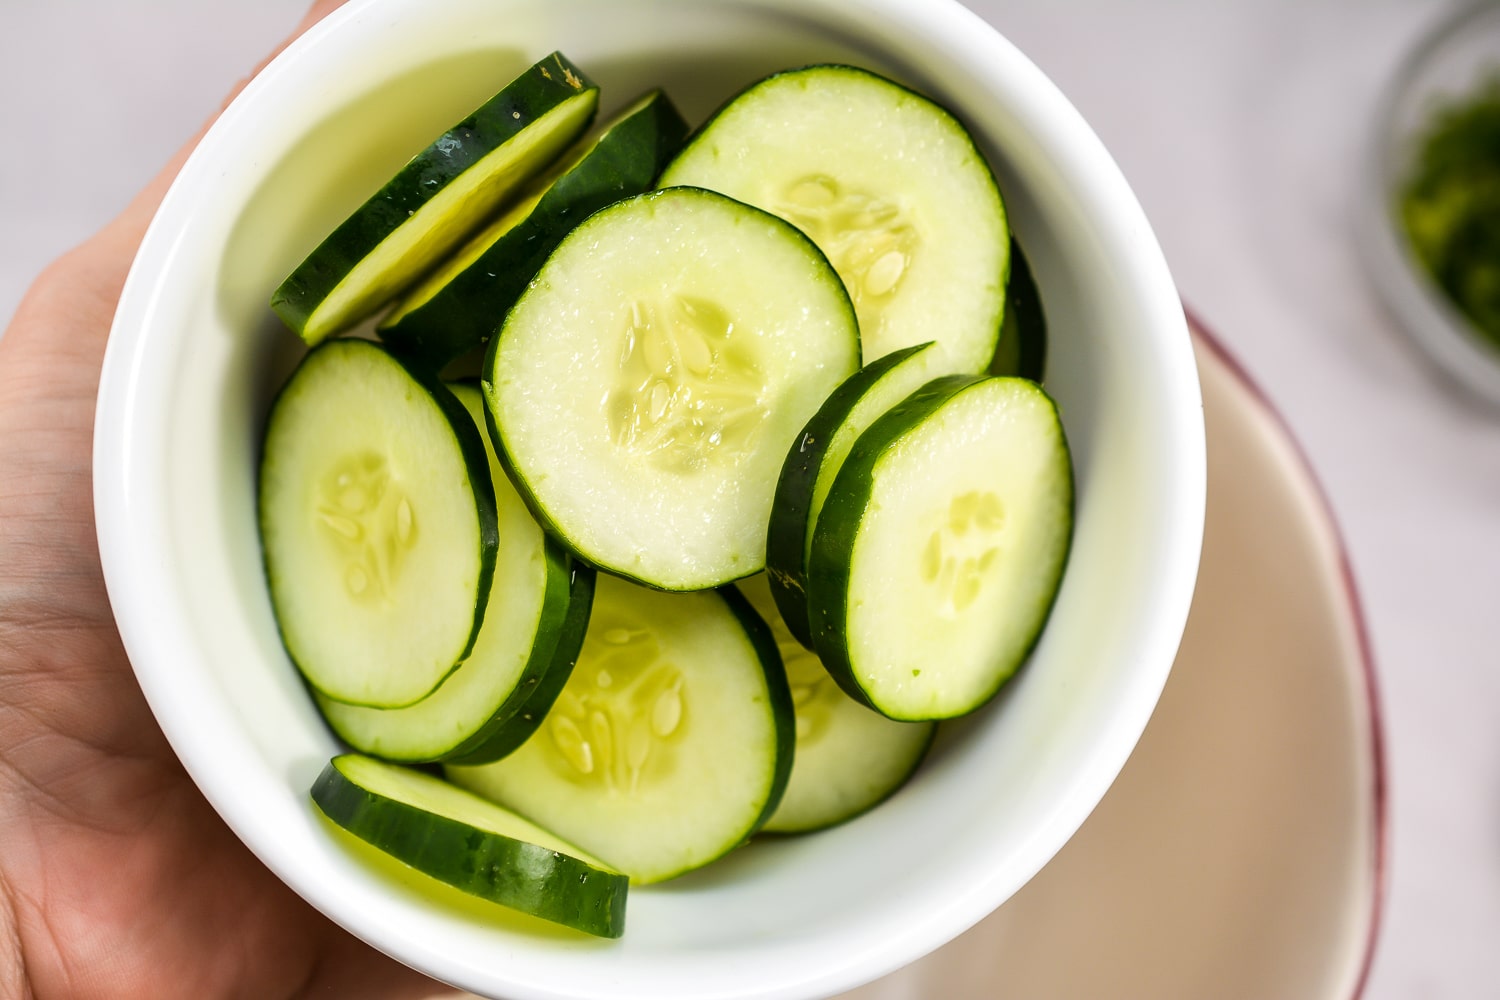 cut up cucumbers in a dish